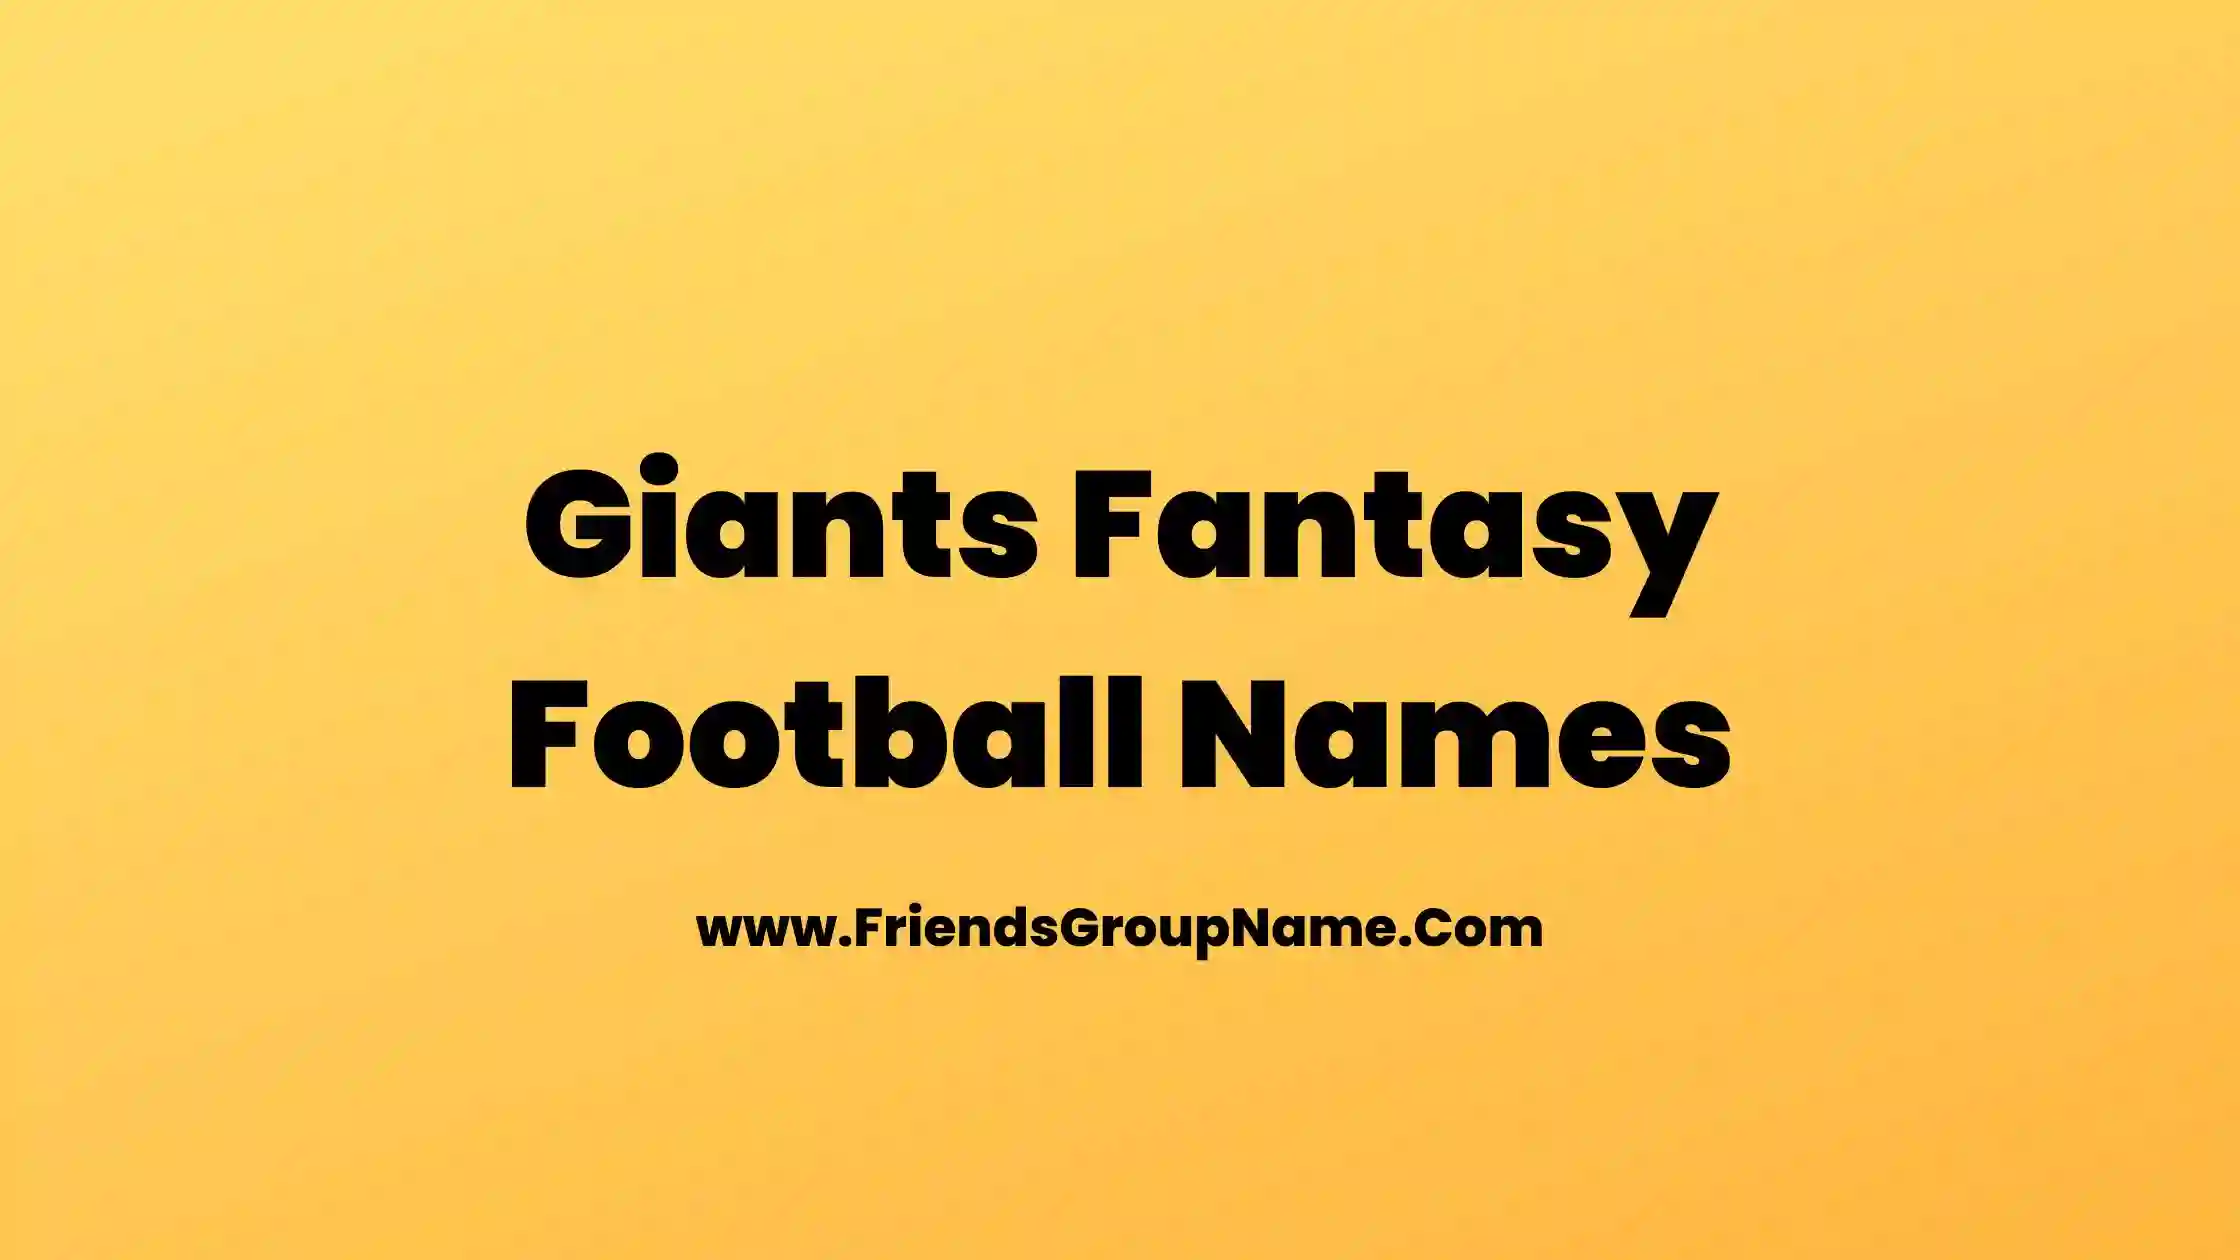 Giants Fantasy Football Names